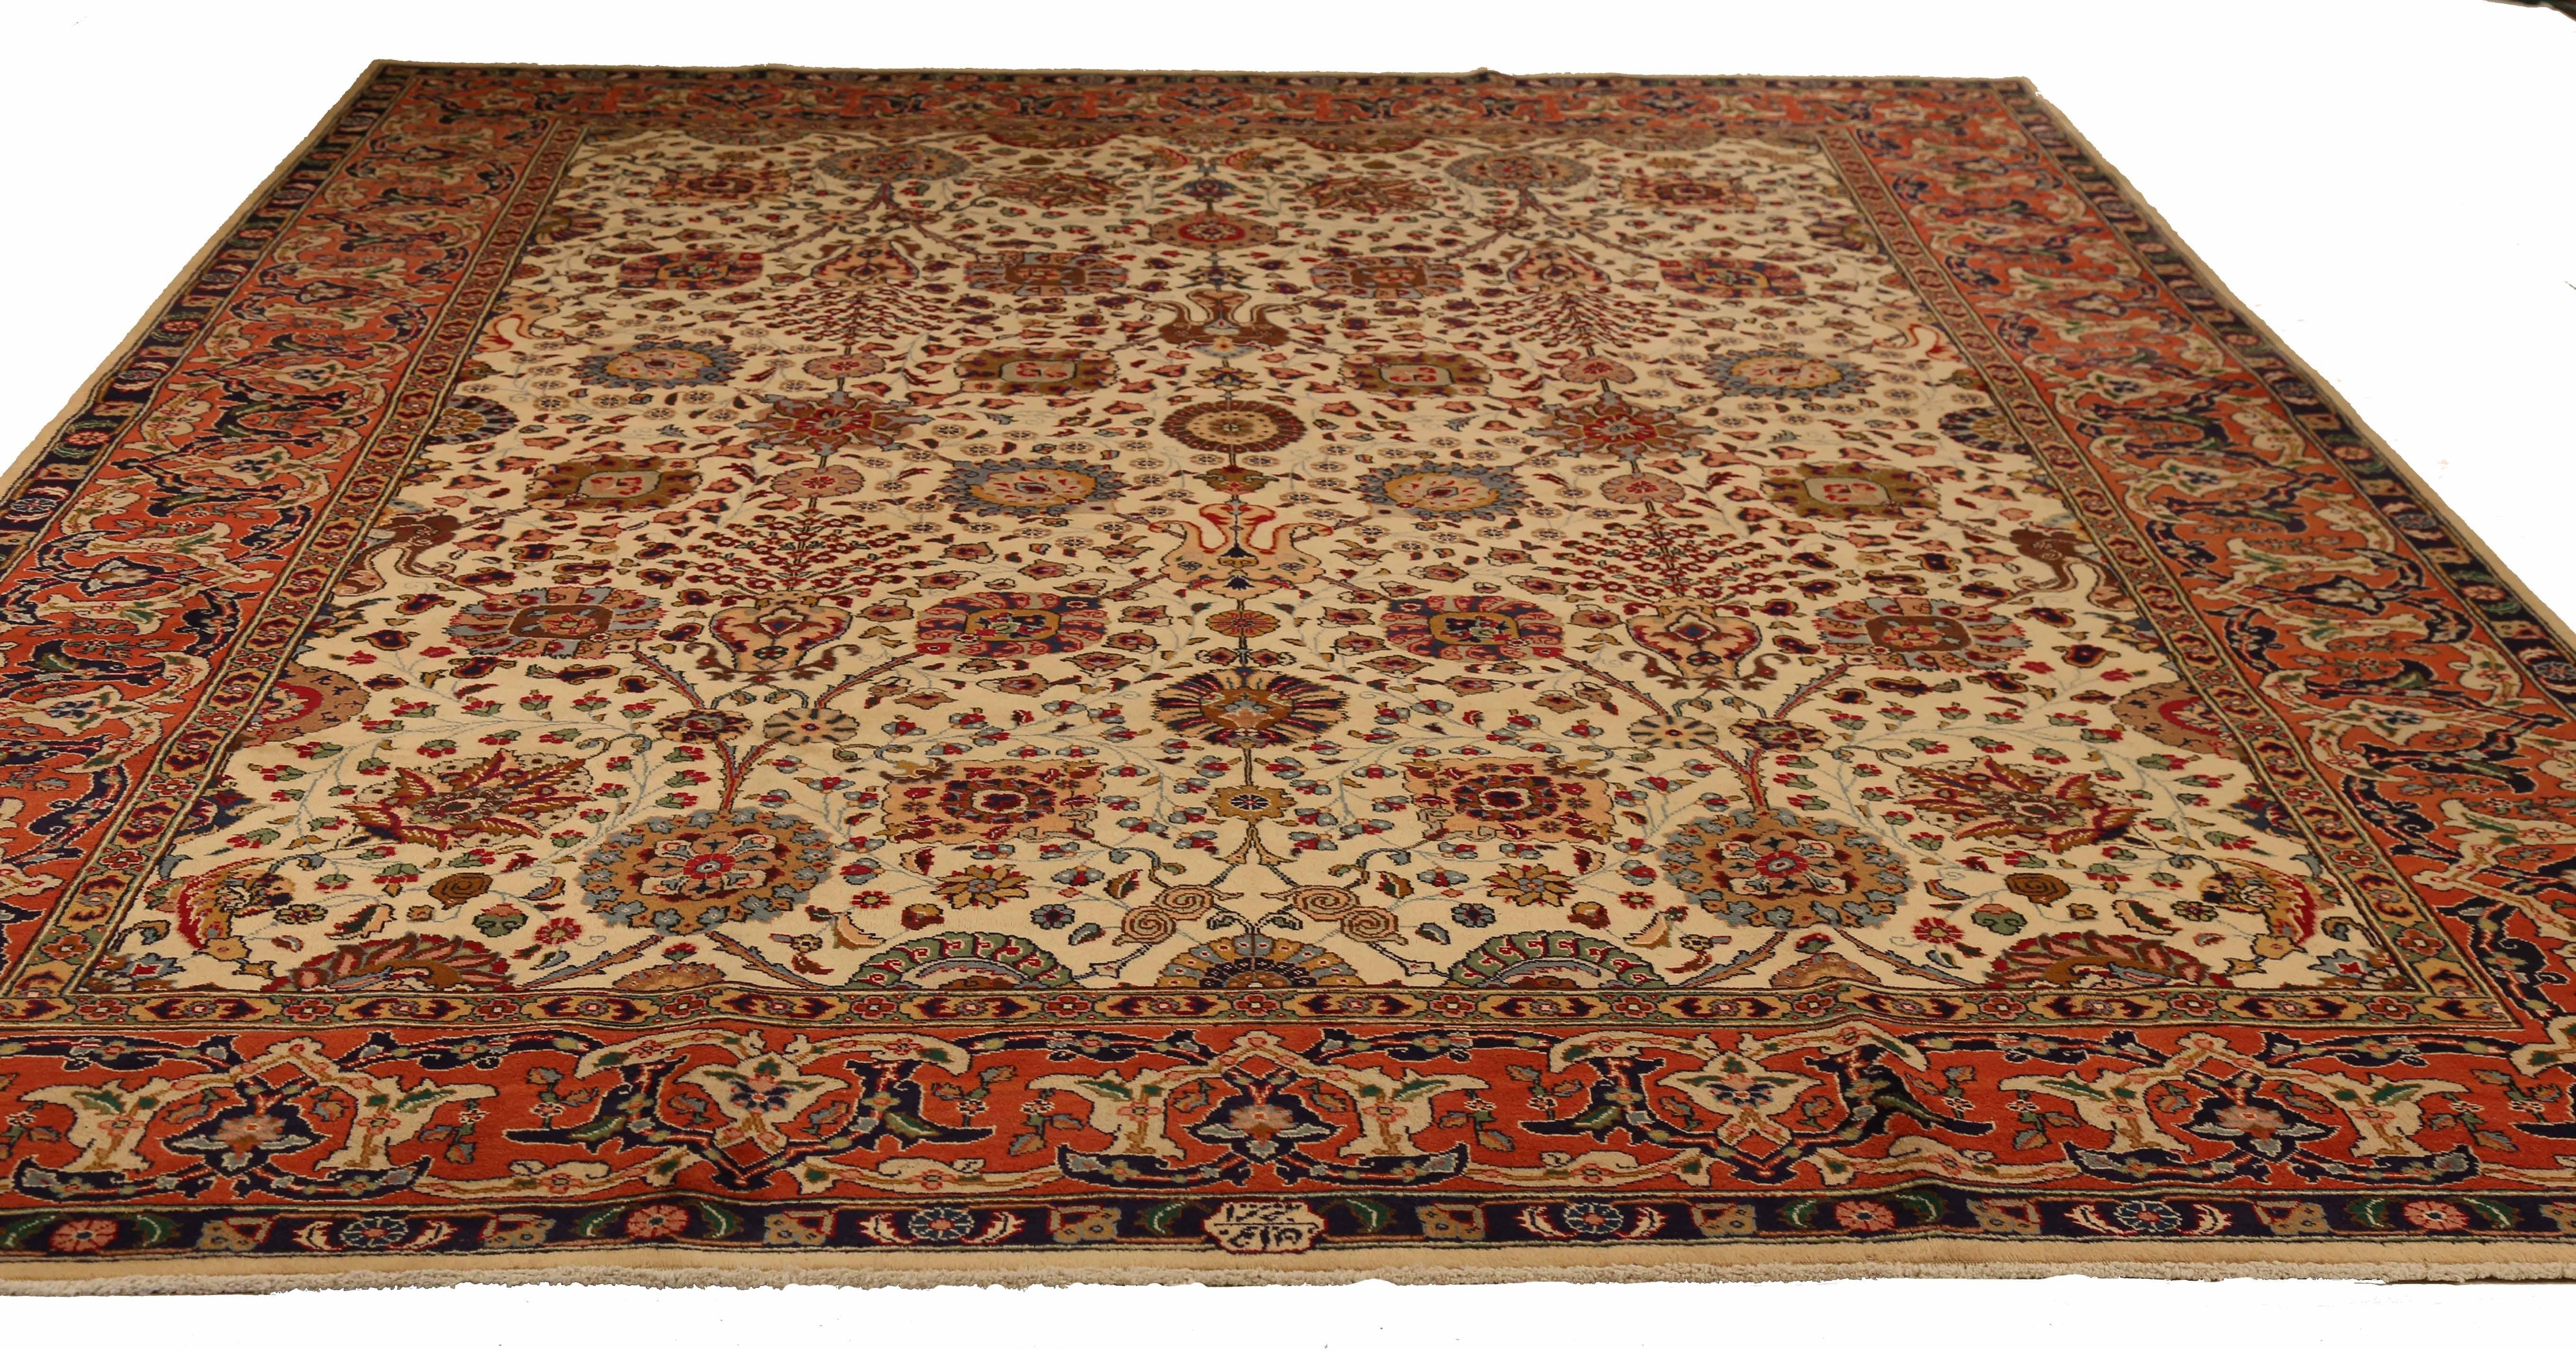 Ancien tapis persan tissé à la main à partir de la meilleure laine de mouton. Il est coloré avec des colorants végétaux entièrement naturels, sans danger pour les humains et les animaux de compagnie. Il s'agit d'un motif traditionnel de Tabriz tissé